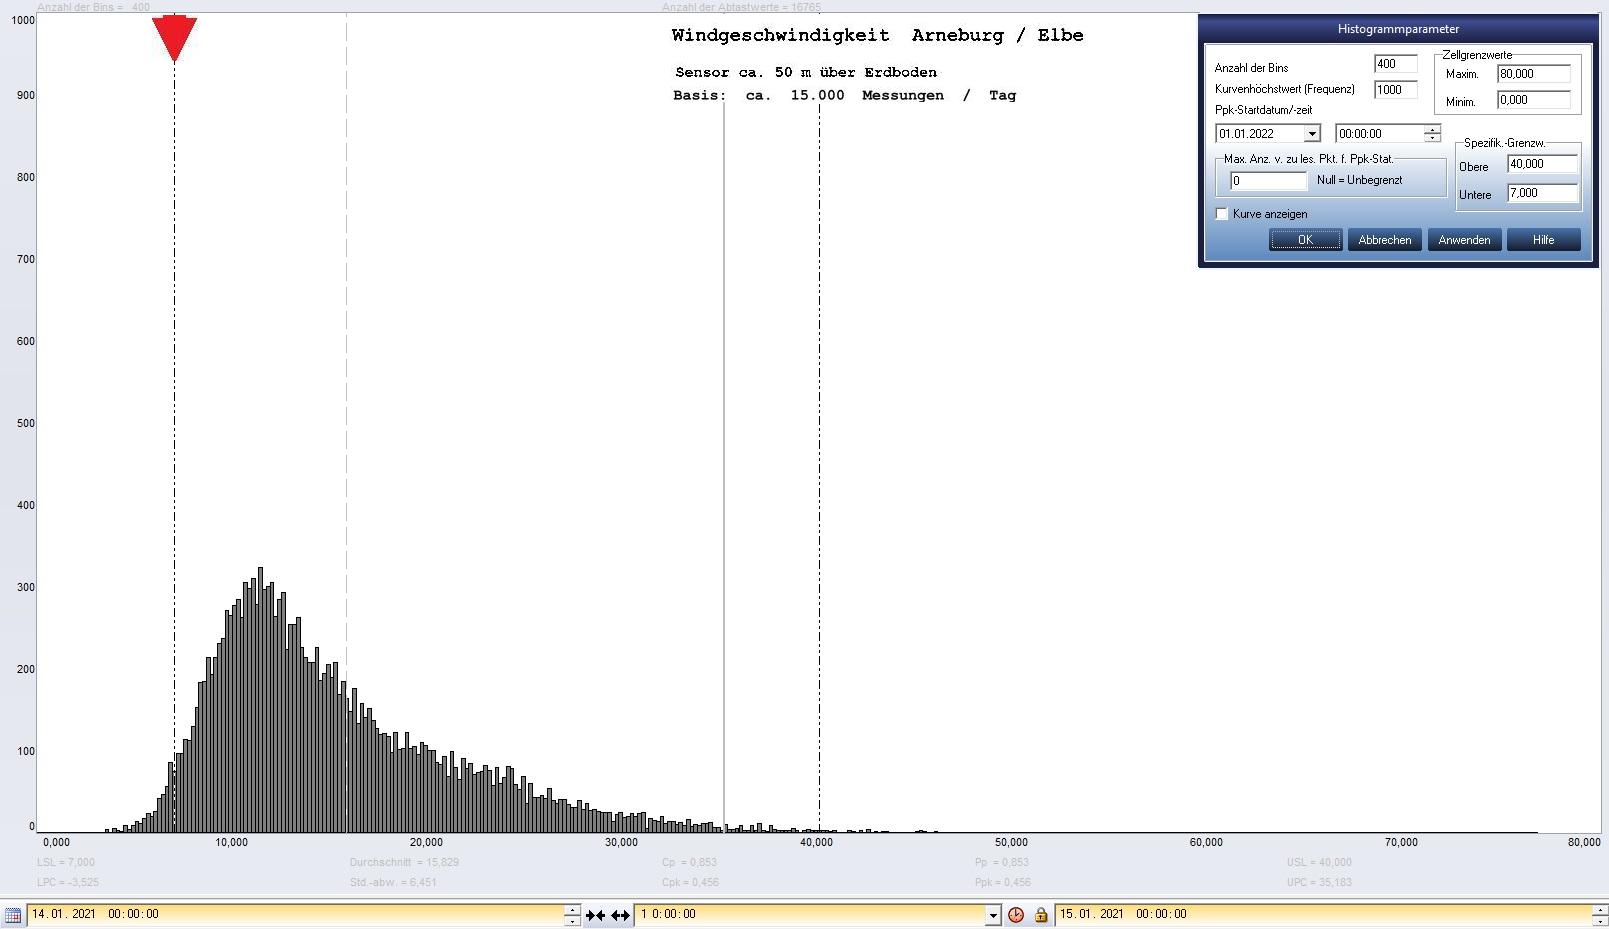 Arneburg Tages-Histogramm Winddaten, 14.01.2021
  Histogramm, Sensor auf Gebude, ca. 50 m ber Erdboden, Basis: 5s-Aufzeichnung